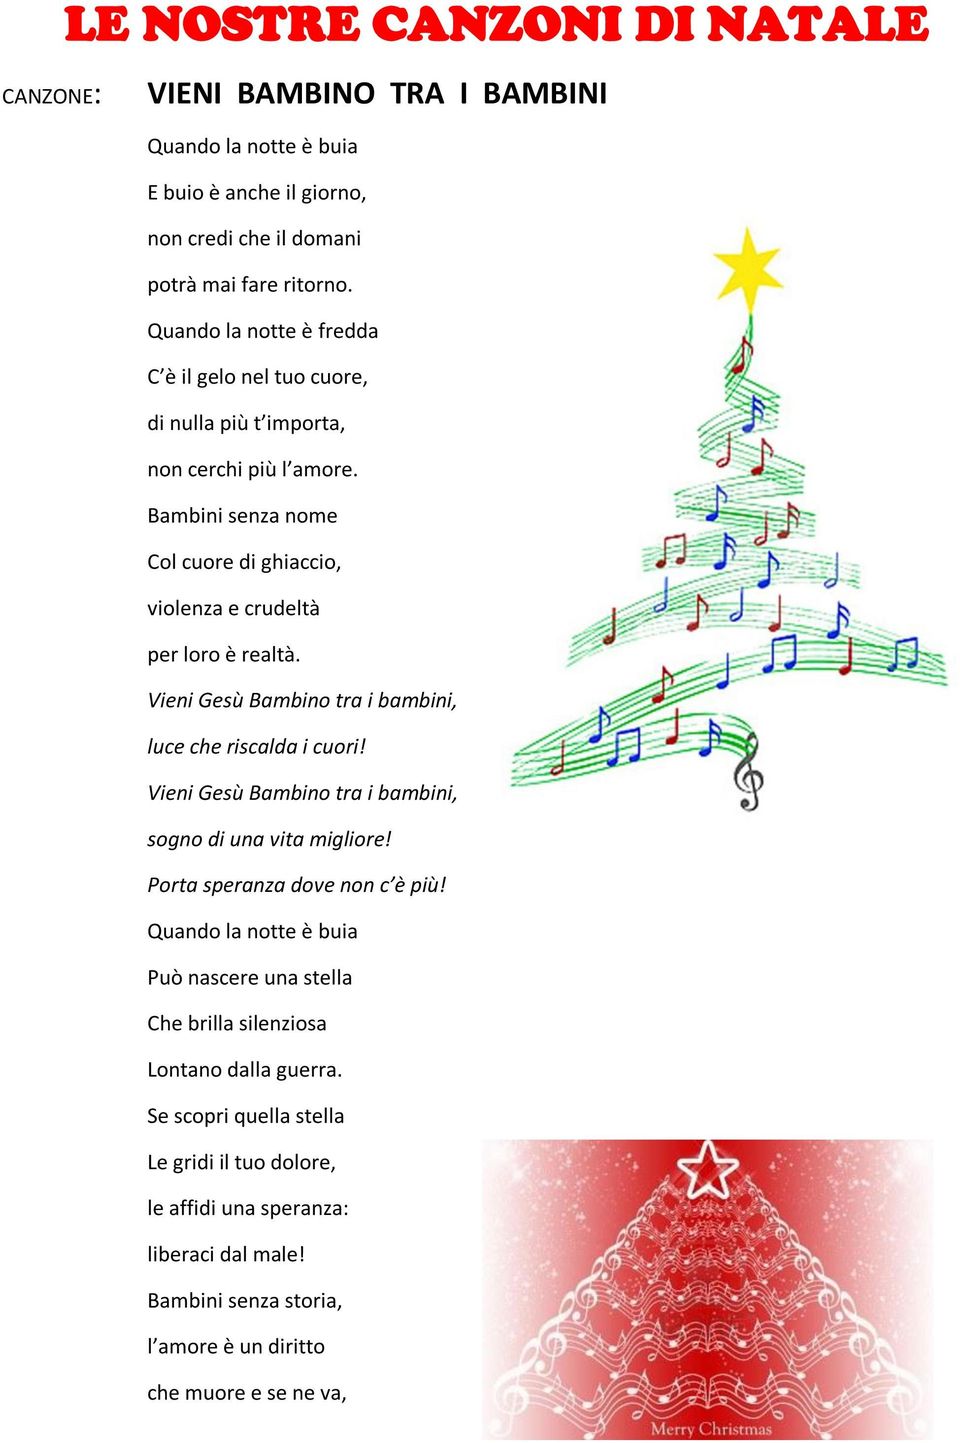 Grande Stella Canzone Di Natale.Le Nostre Canzoni Di Natale Pdf Free Download